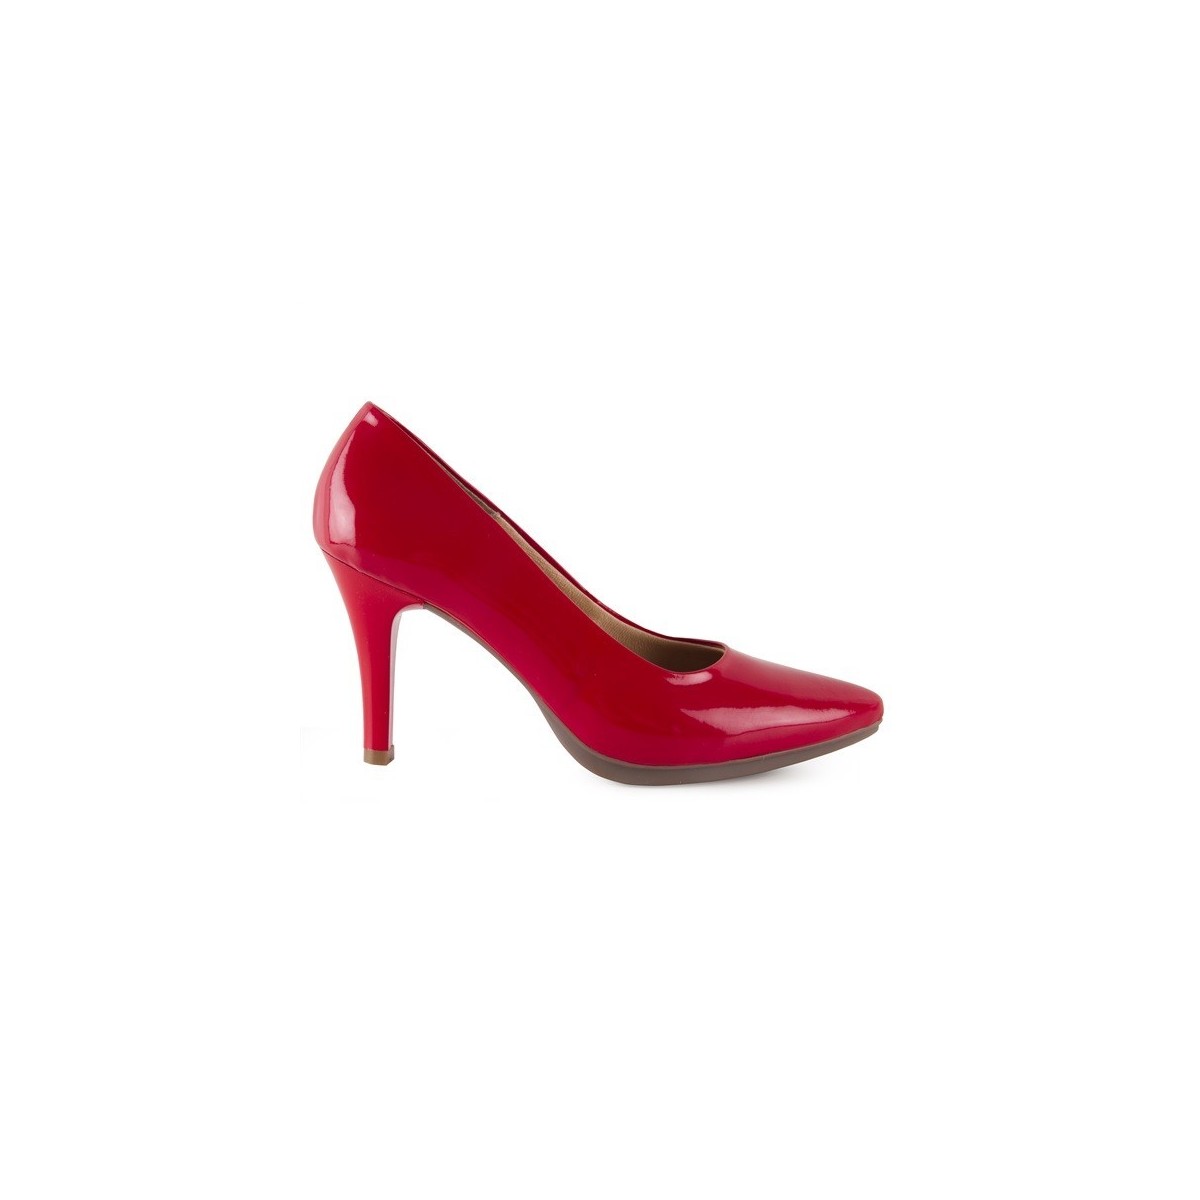 Zapatos salones de mujer con tacón en piel color rojo y plantilla rellena de gel, fabricados en España 